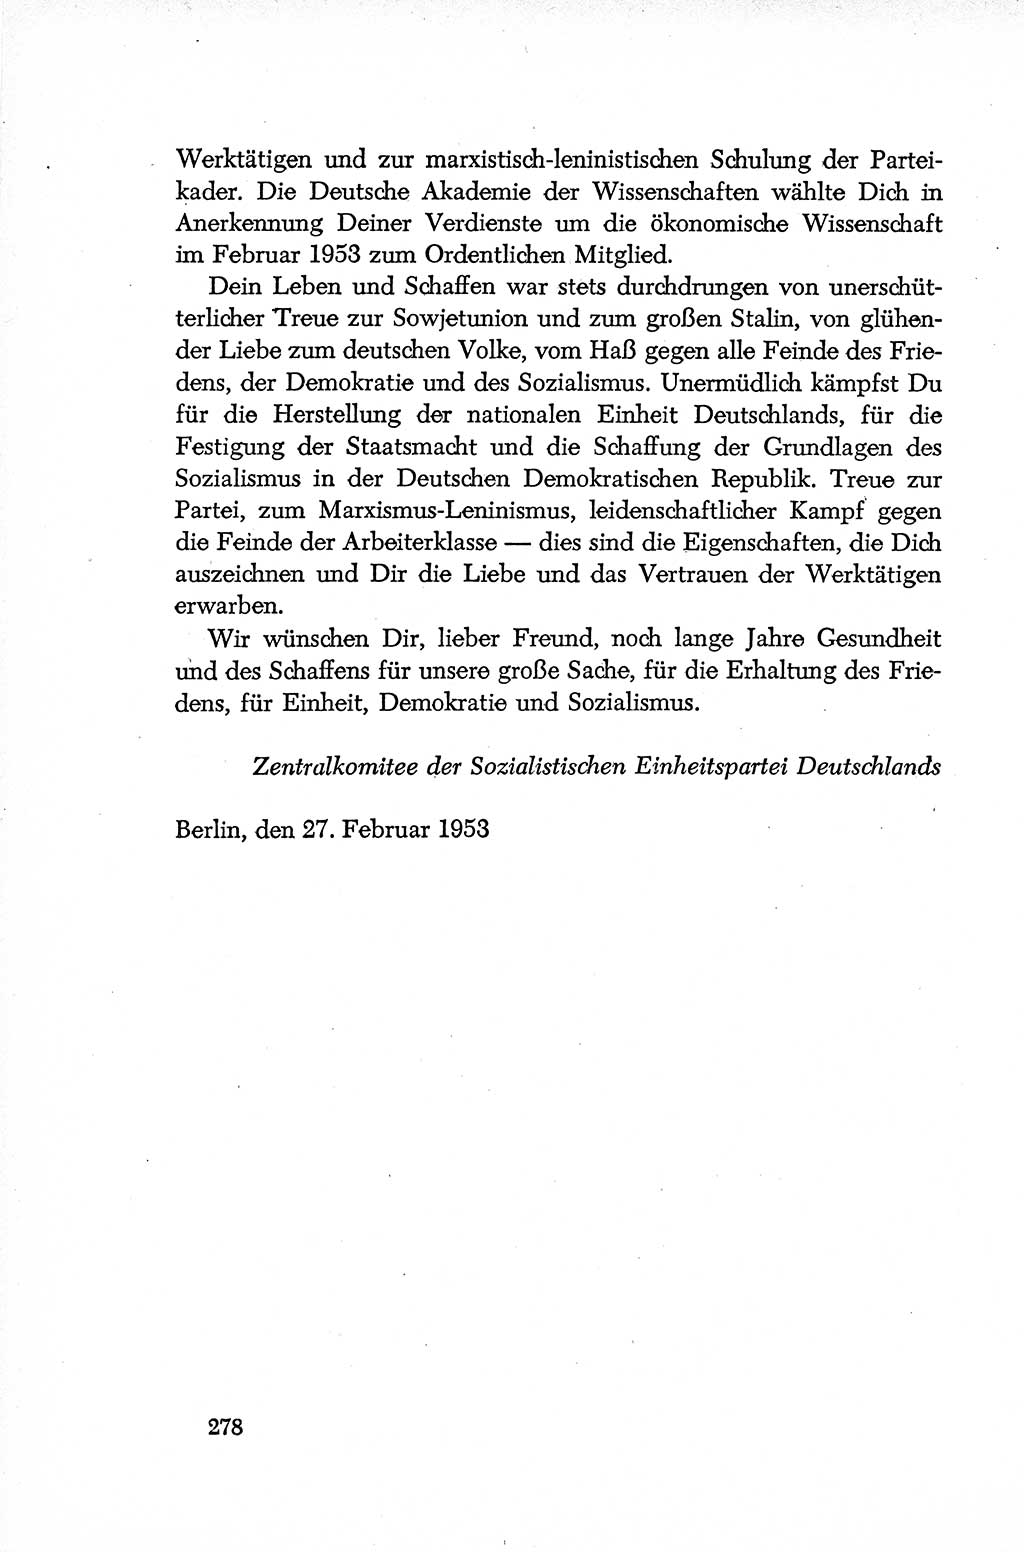 Dokumente der Sozialistischen Einheitspartei Deutschlands (SED) [Deutsche Demokratische Republik (DDR)] 1952-1953, Seite 278 (Dok. SED DDR 1952-1953, S. 278)